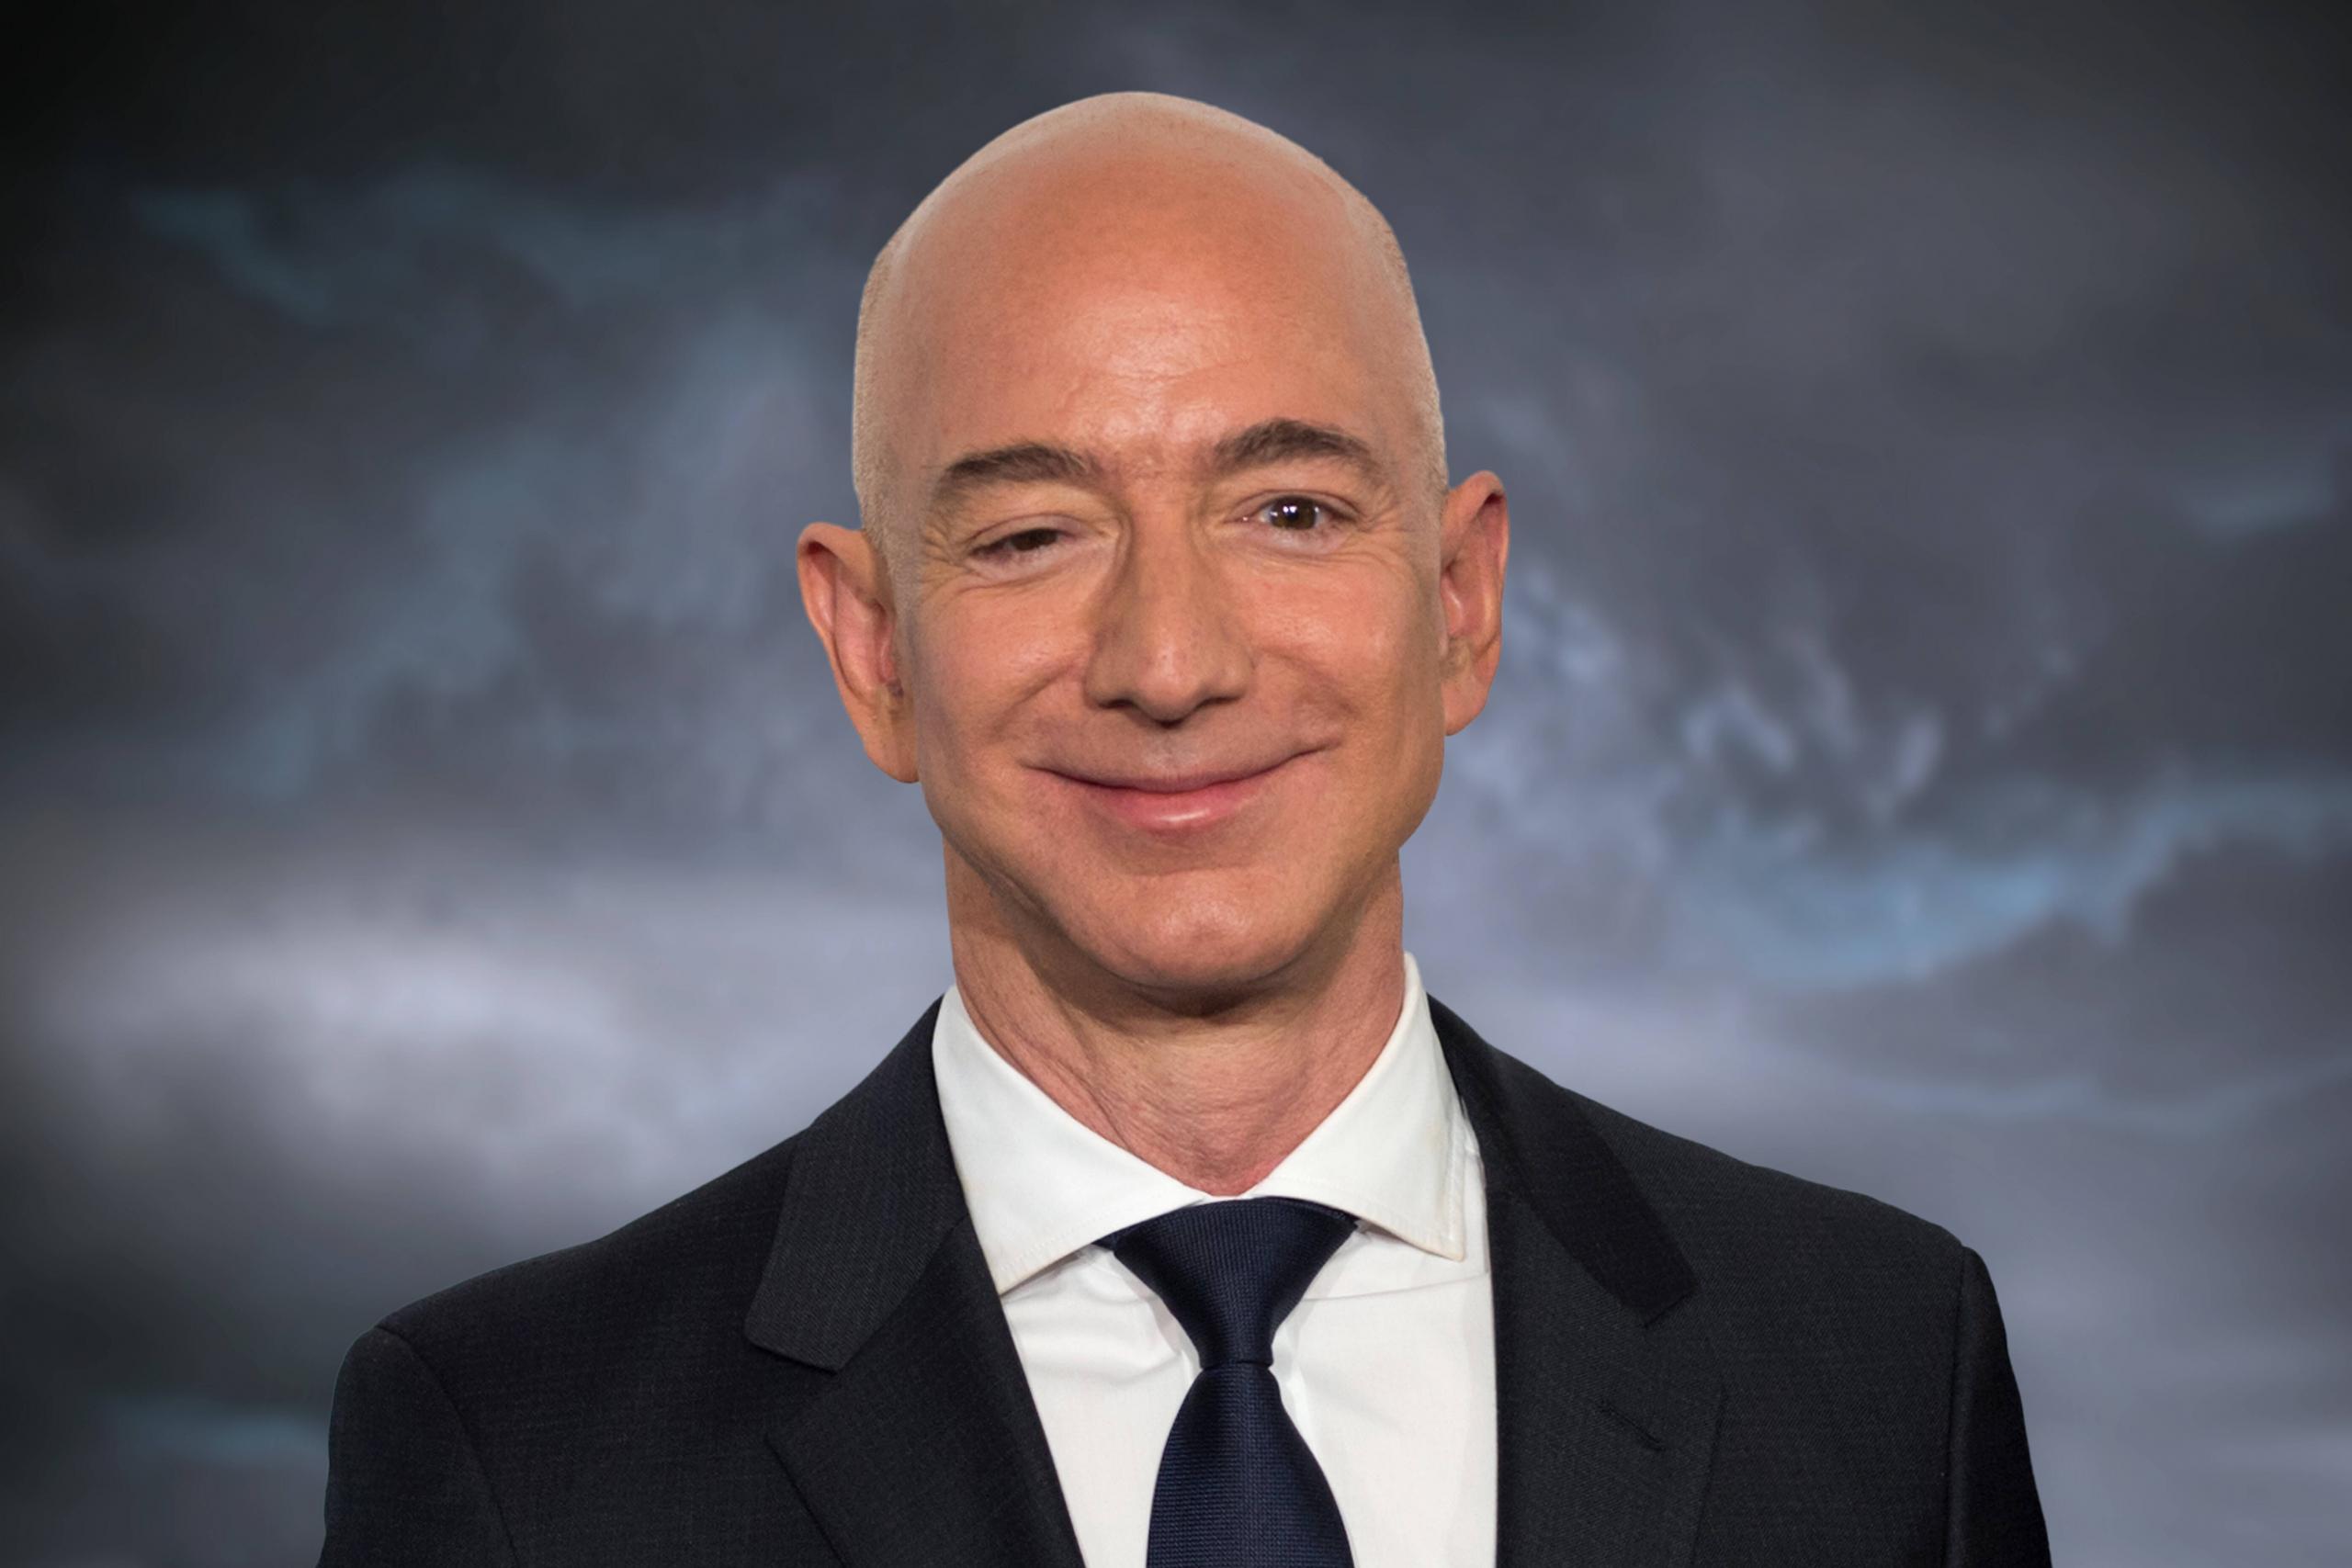 Mit einem absurden Vermögen von 188 Milliarden US-Dollar ist Amazon-Gründer Jeff Bezos der reichste Mann der Welt.